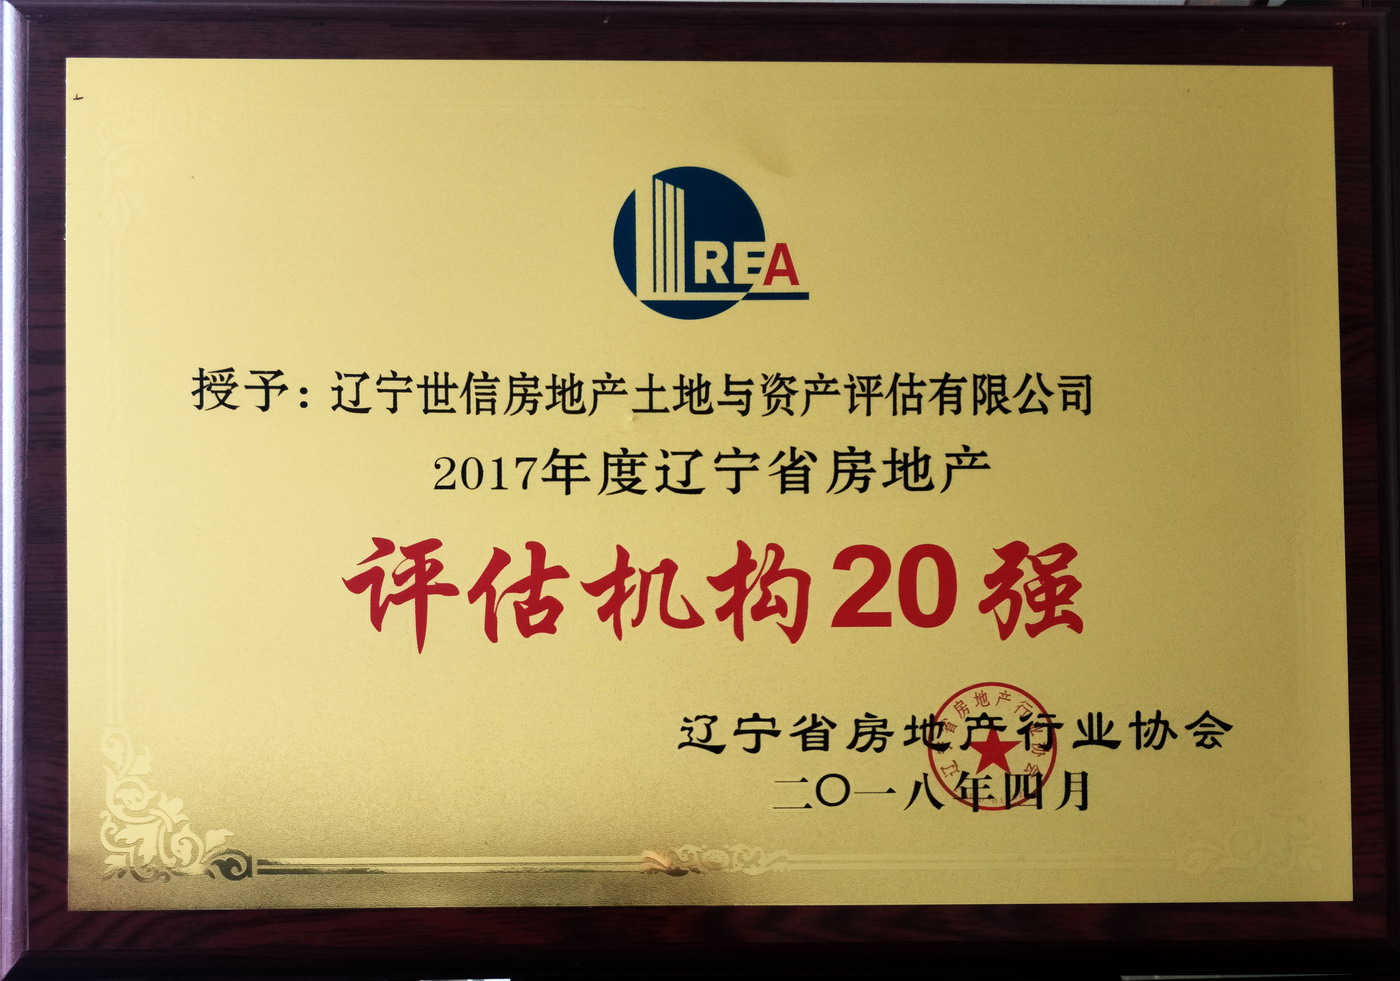 2018年获颁辽宁省评估机构二十强称号